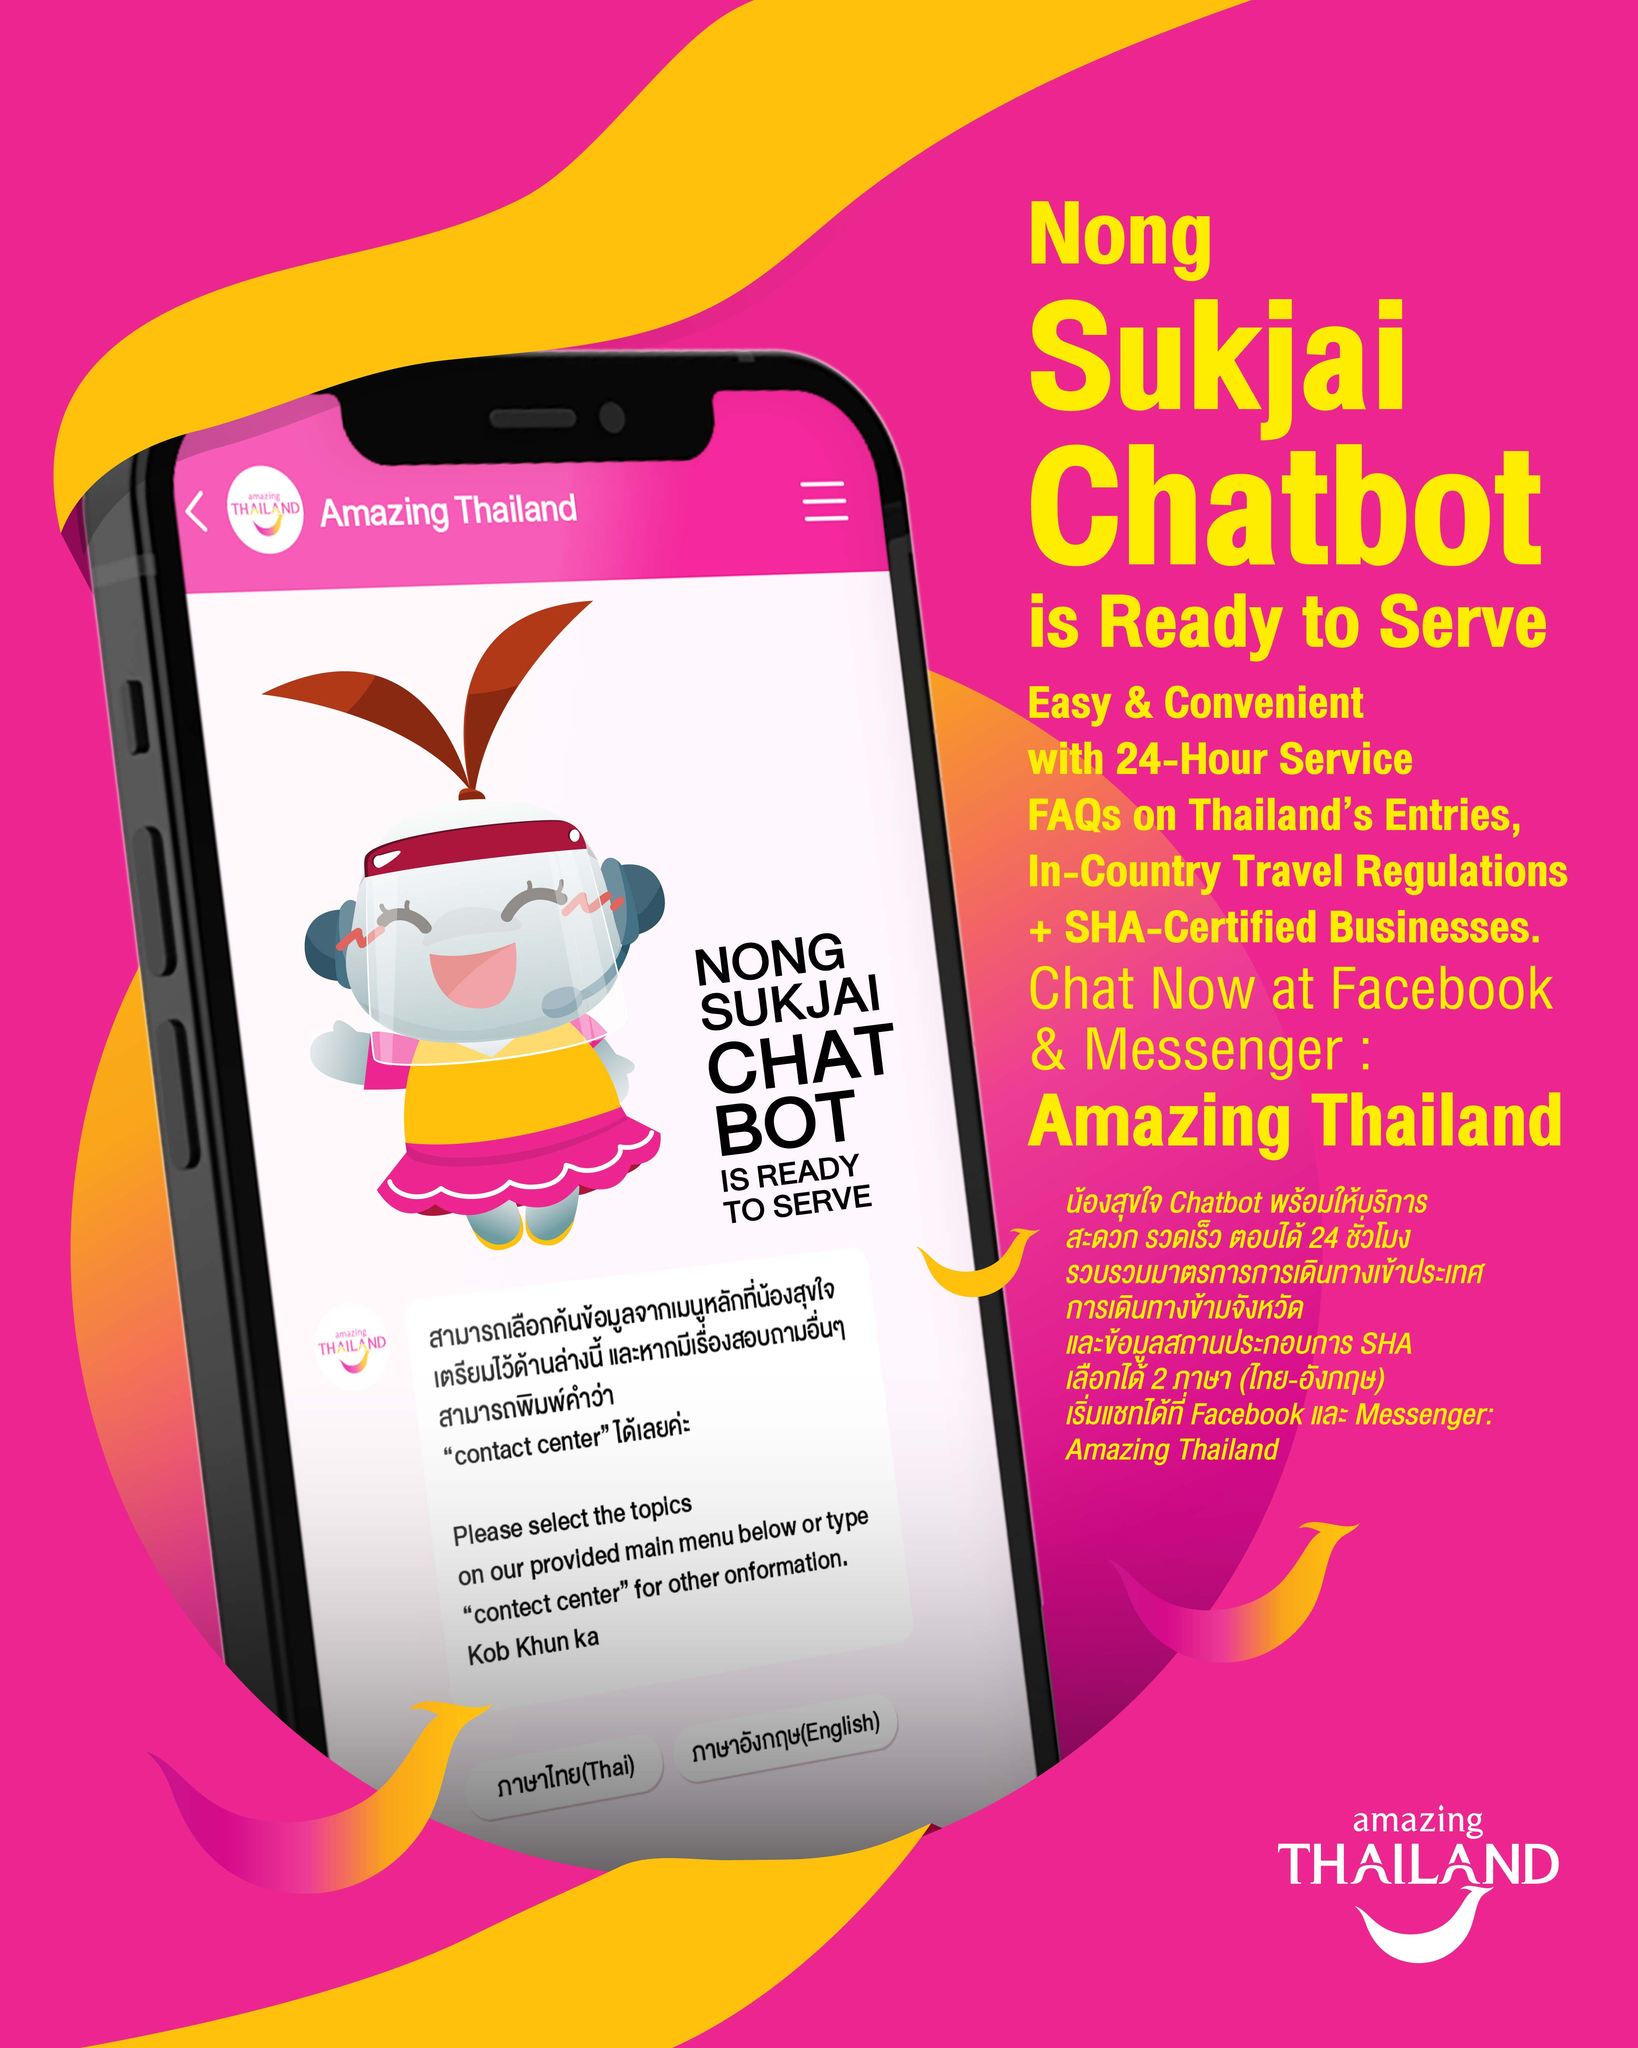 Últimos programas de entrada a Tailandia; No hay fecha límite de inscripción para Test & Go el 15 de enero; Plan del Nuevo Capítulo; TAT da la bienvenida al chatbot Nong Sukjai